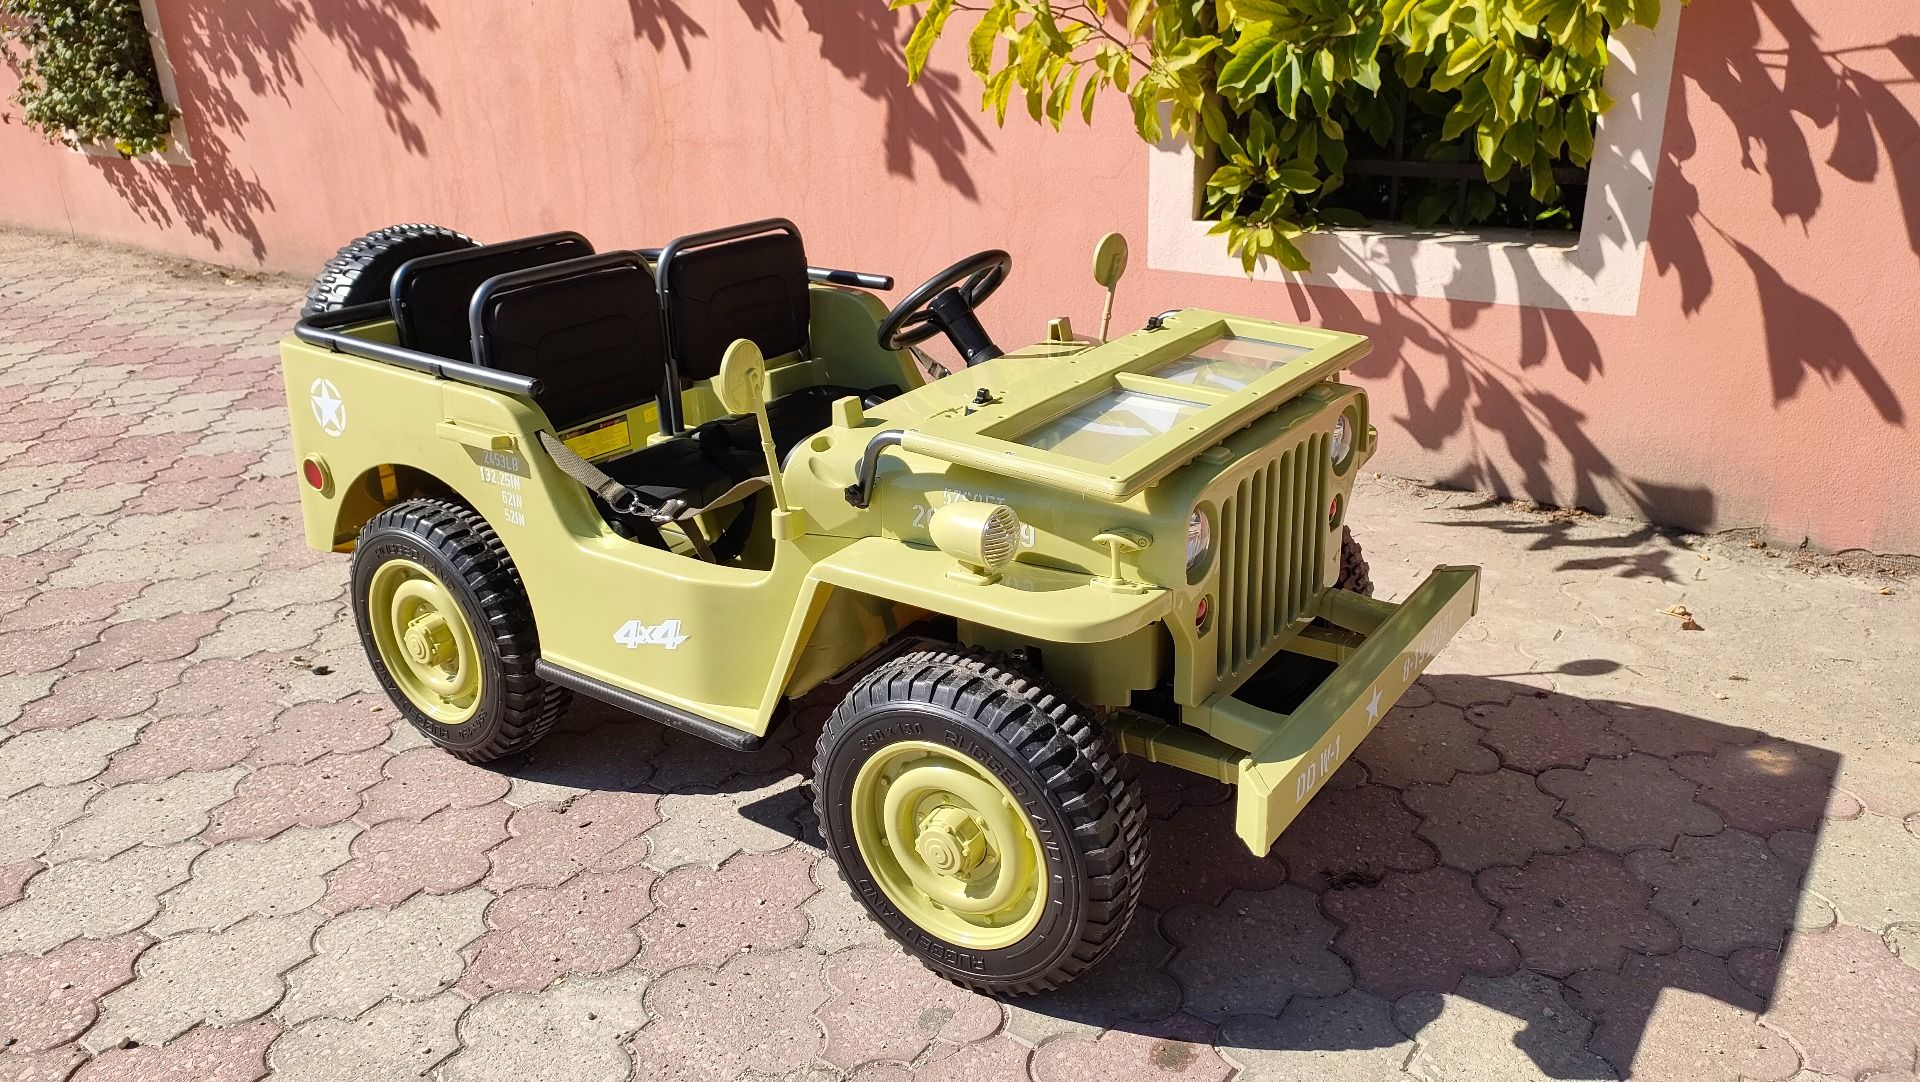 USA ARMY 4x4 Jeep 3 személyes elektromos kisautó bőrüléssel és gumi kerékkel